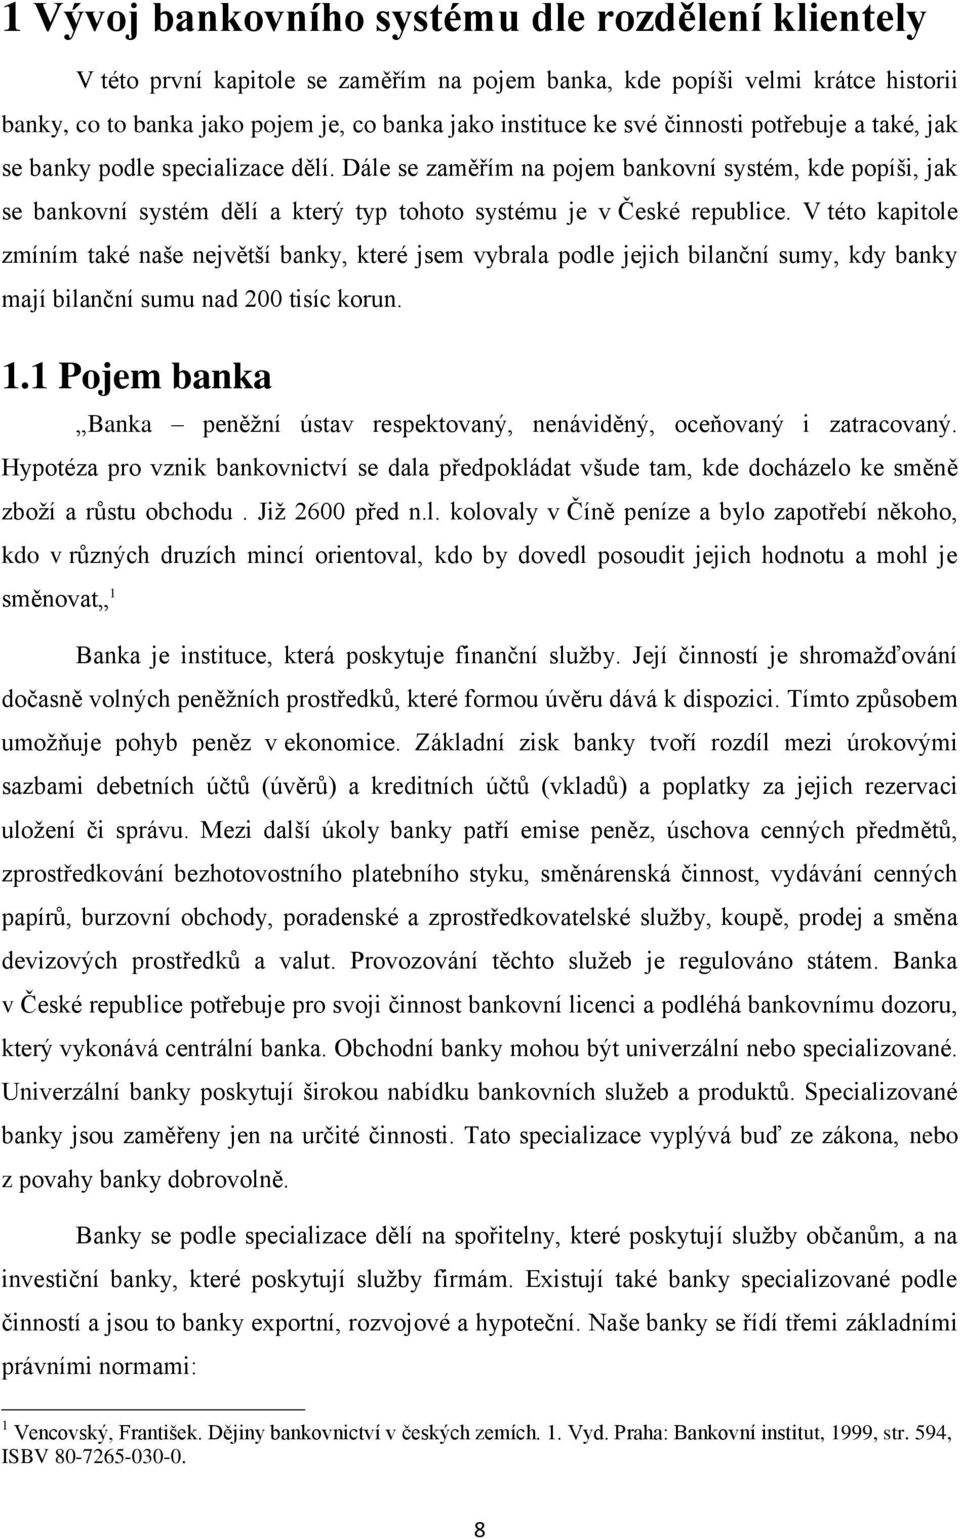 V této kapitole zmíním také naše největší banky, které jsem vybrala podle jejich bilanční sumy, kdy banky mají bilanční sumu nad 200 tisíc korun. 1.